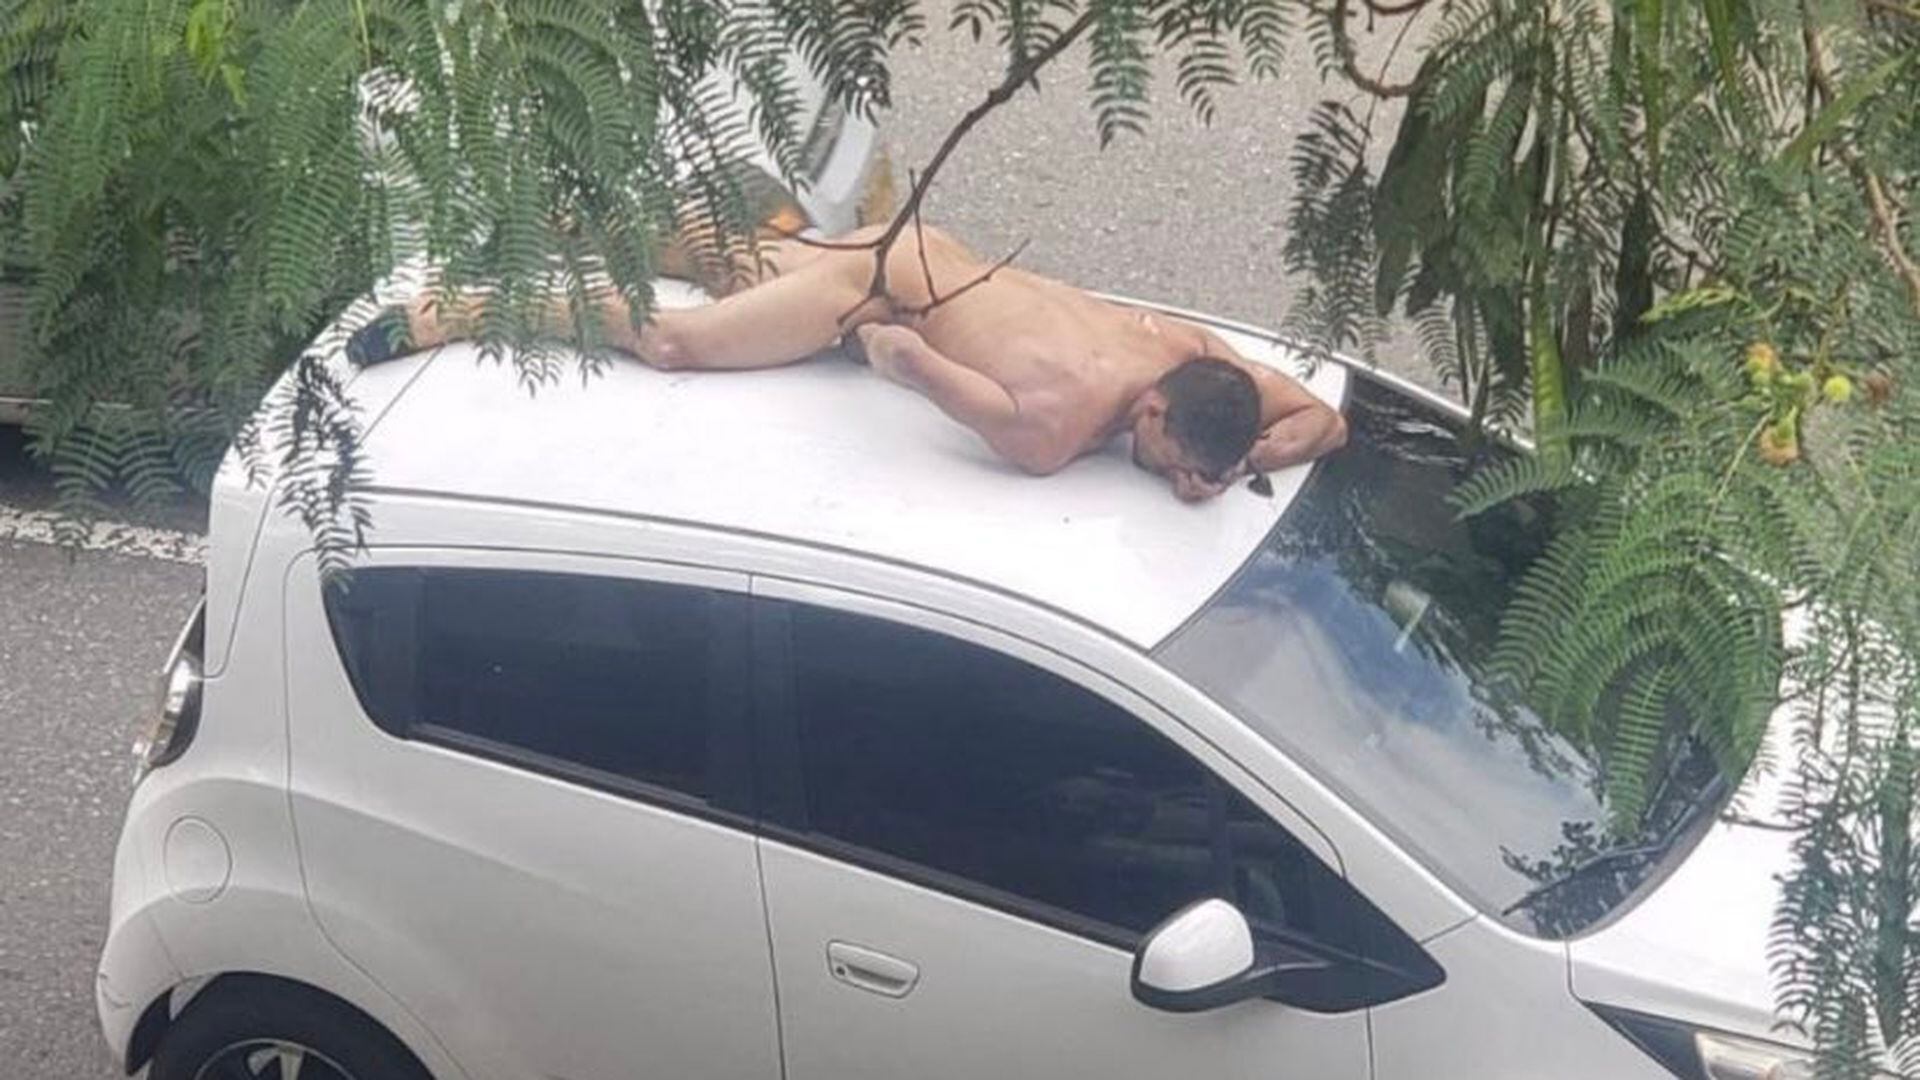 Como Dios lo trajo al mundo, un hombre se subió desnudo al techo de un carro  en Medellín